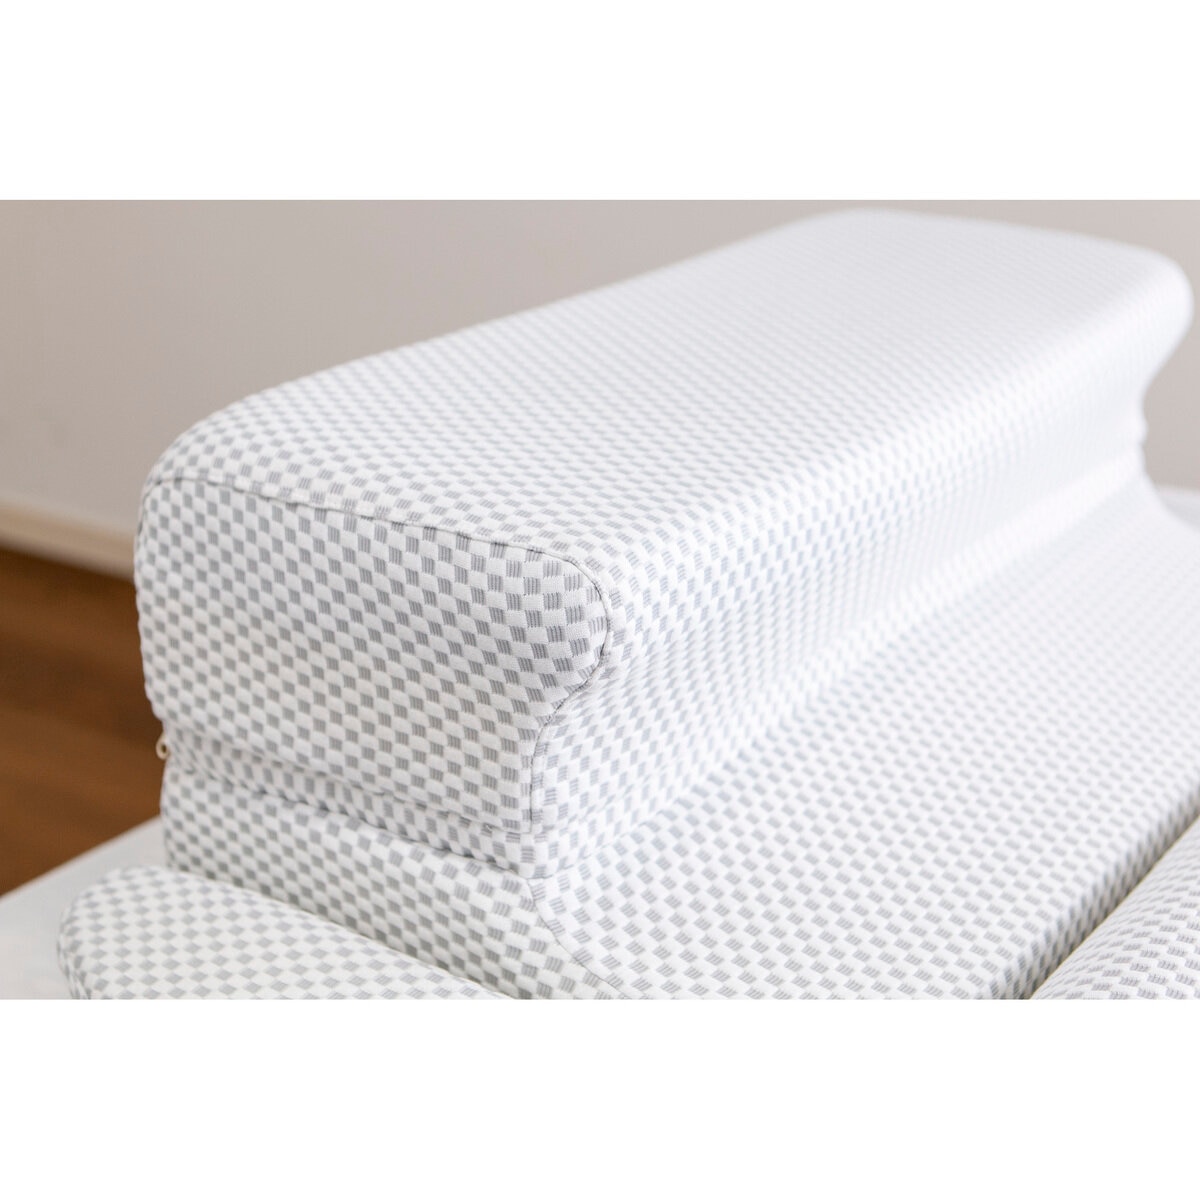 フランスベッド いびき対策枕 専用枕カバー